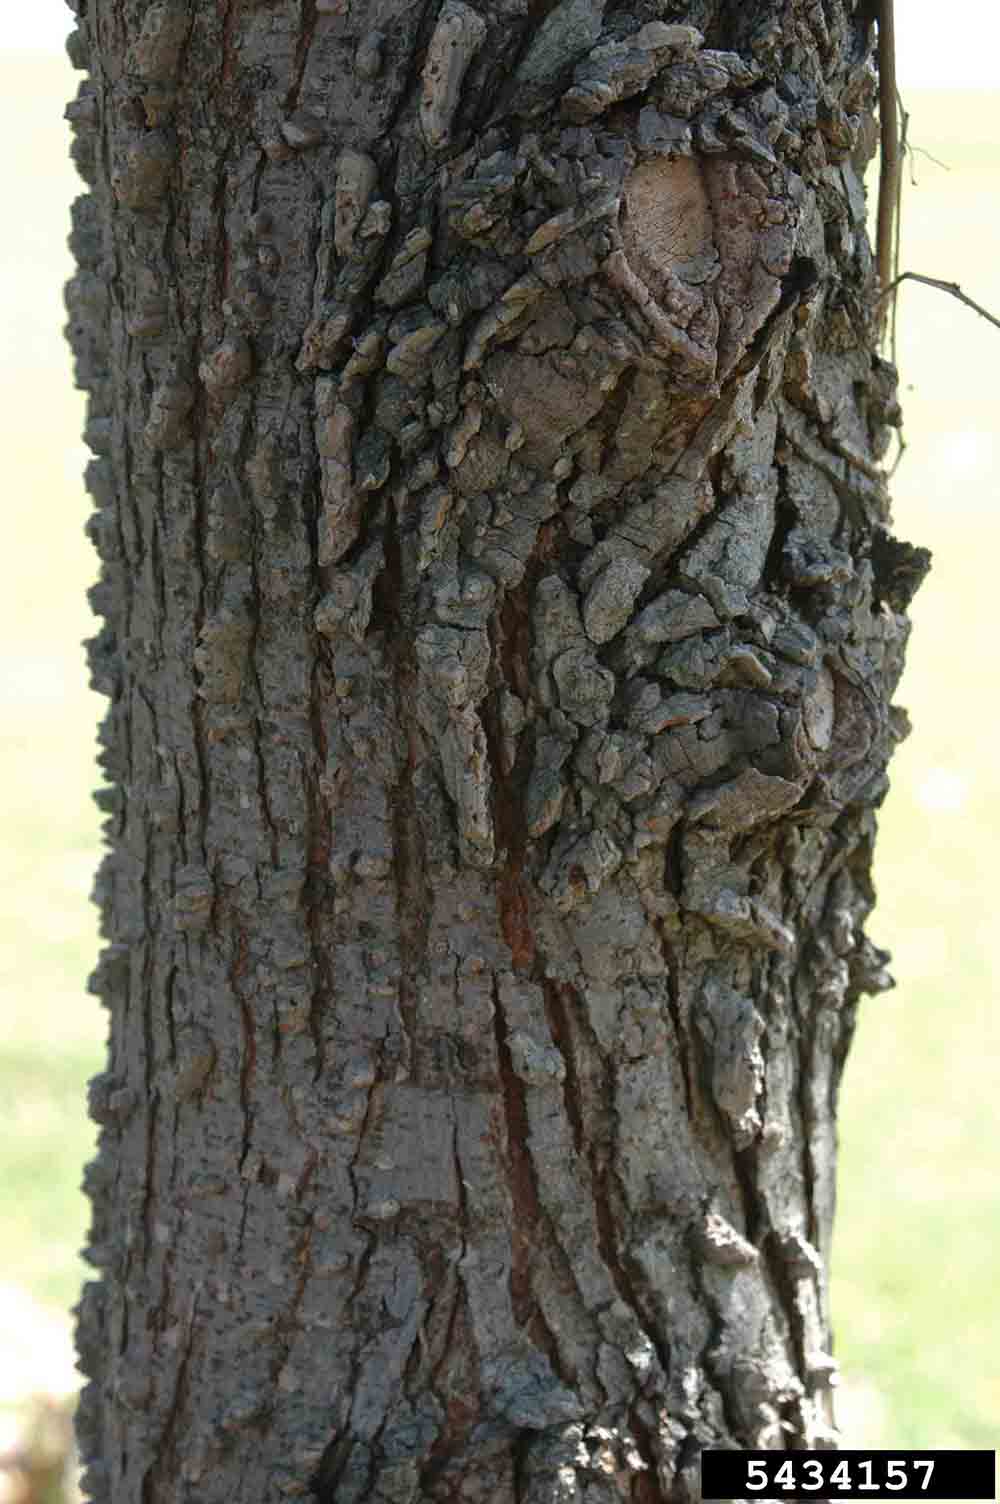 Winged elm bark on trunk of mature tree